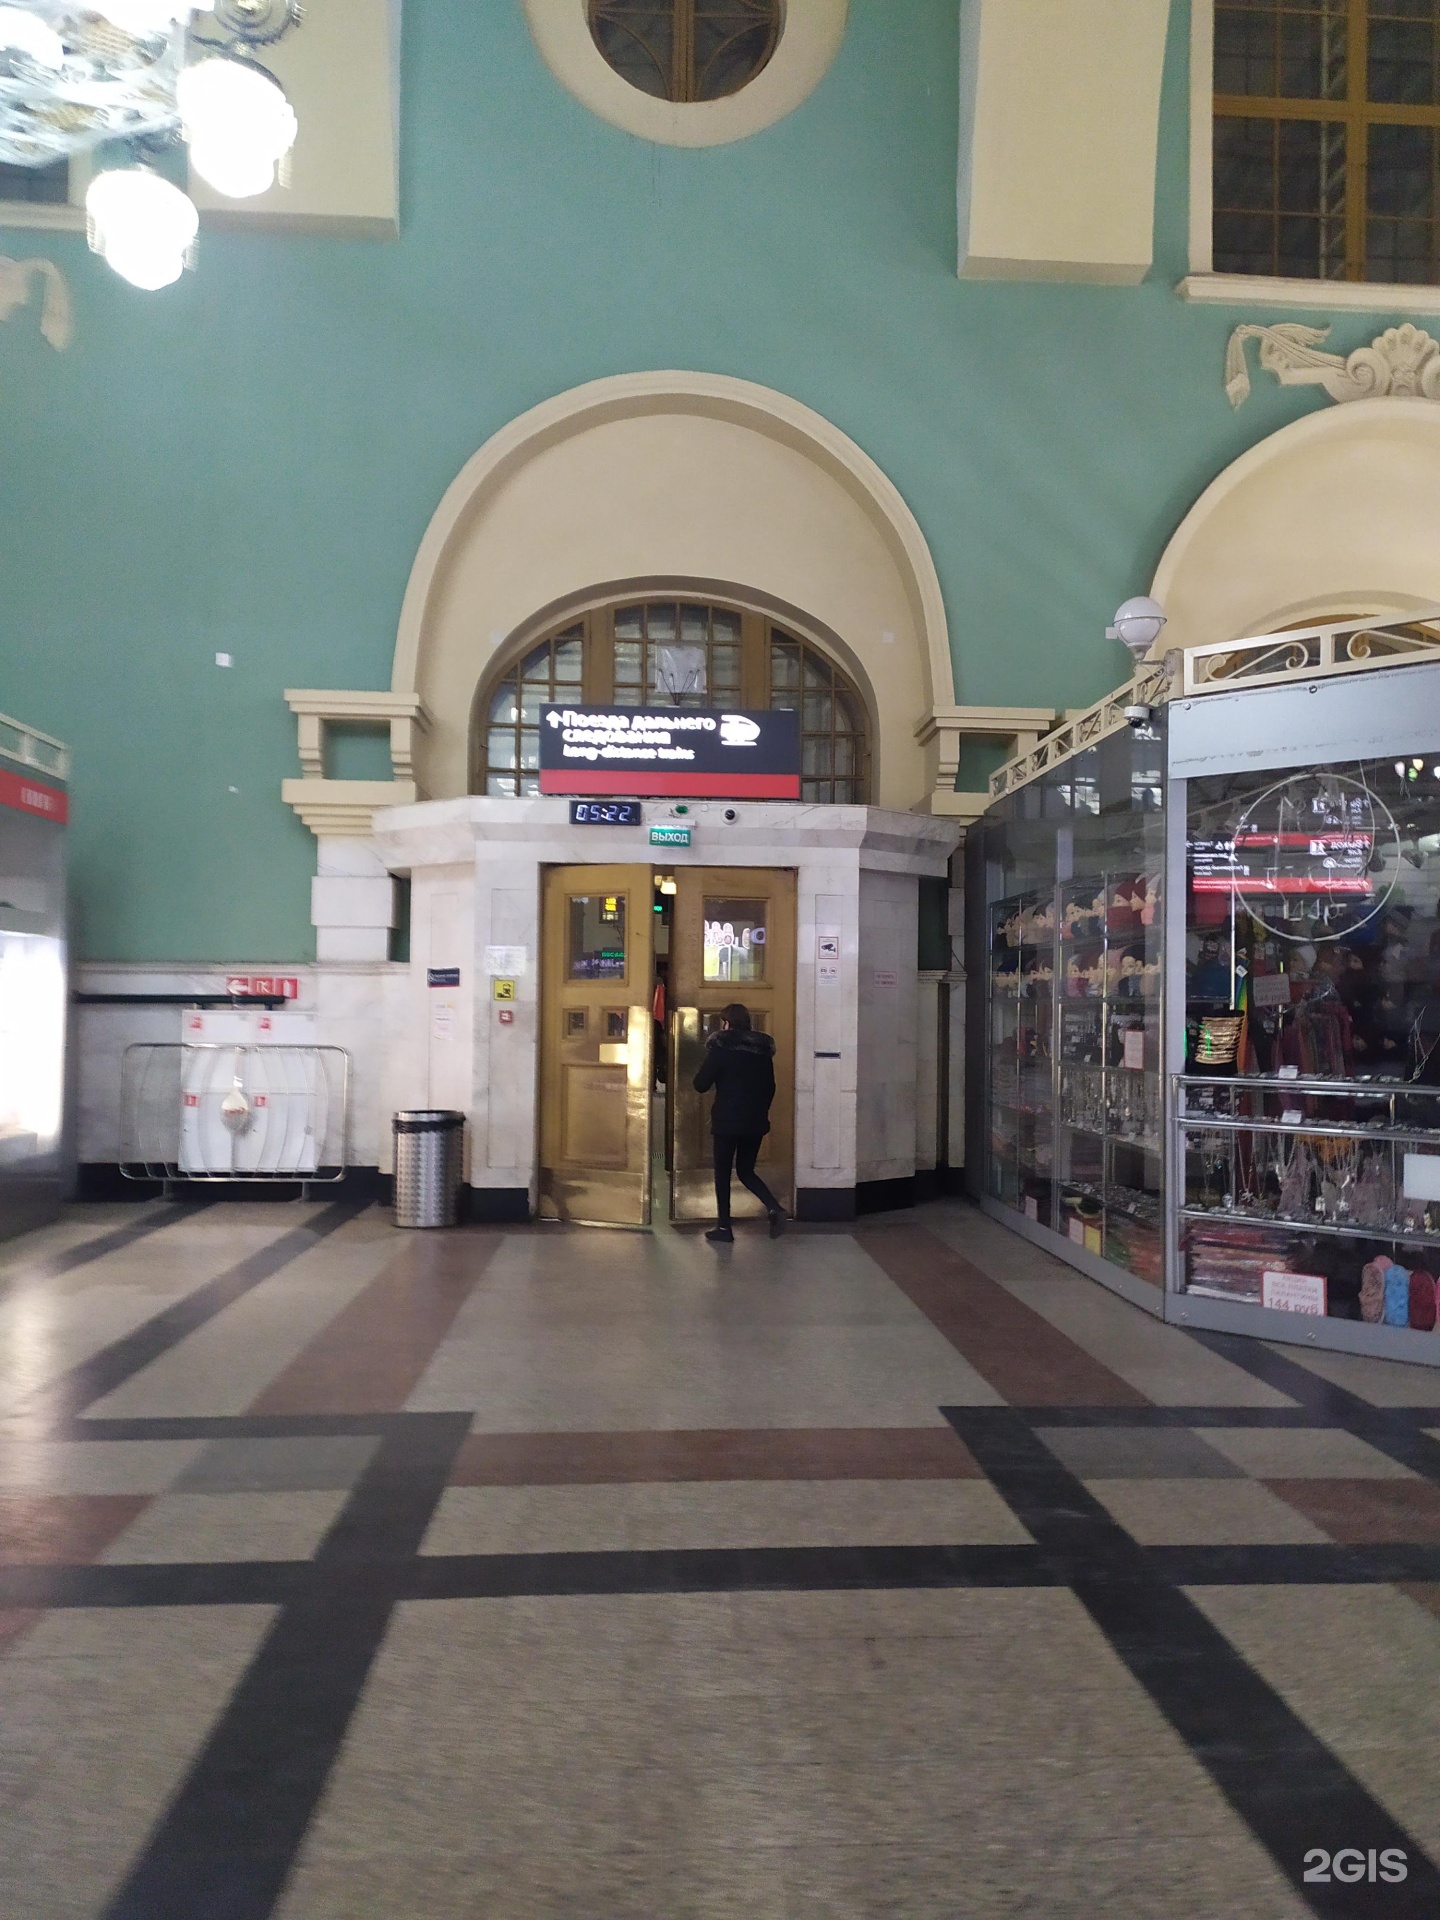 Телефон казанского жд вокзала. Комсомольский вокзал.